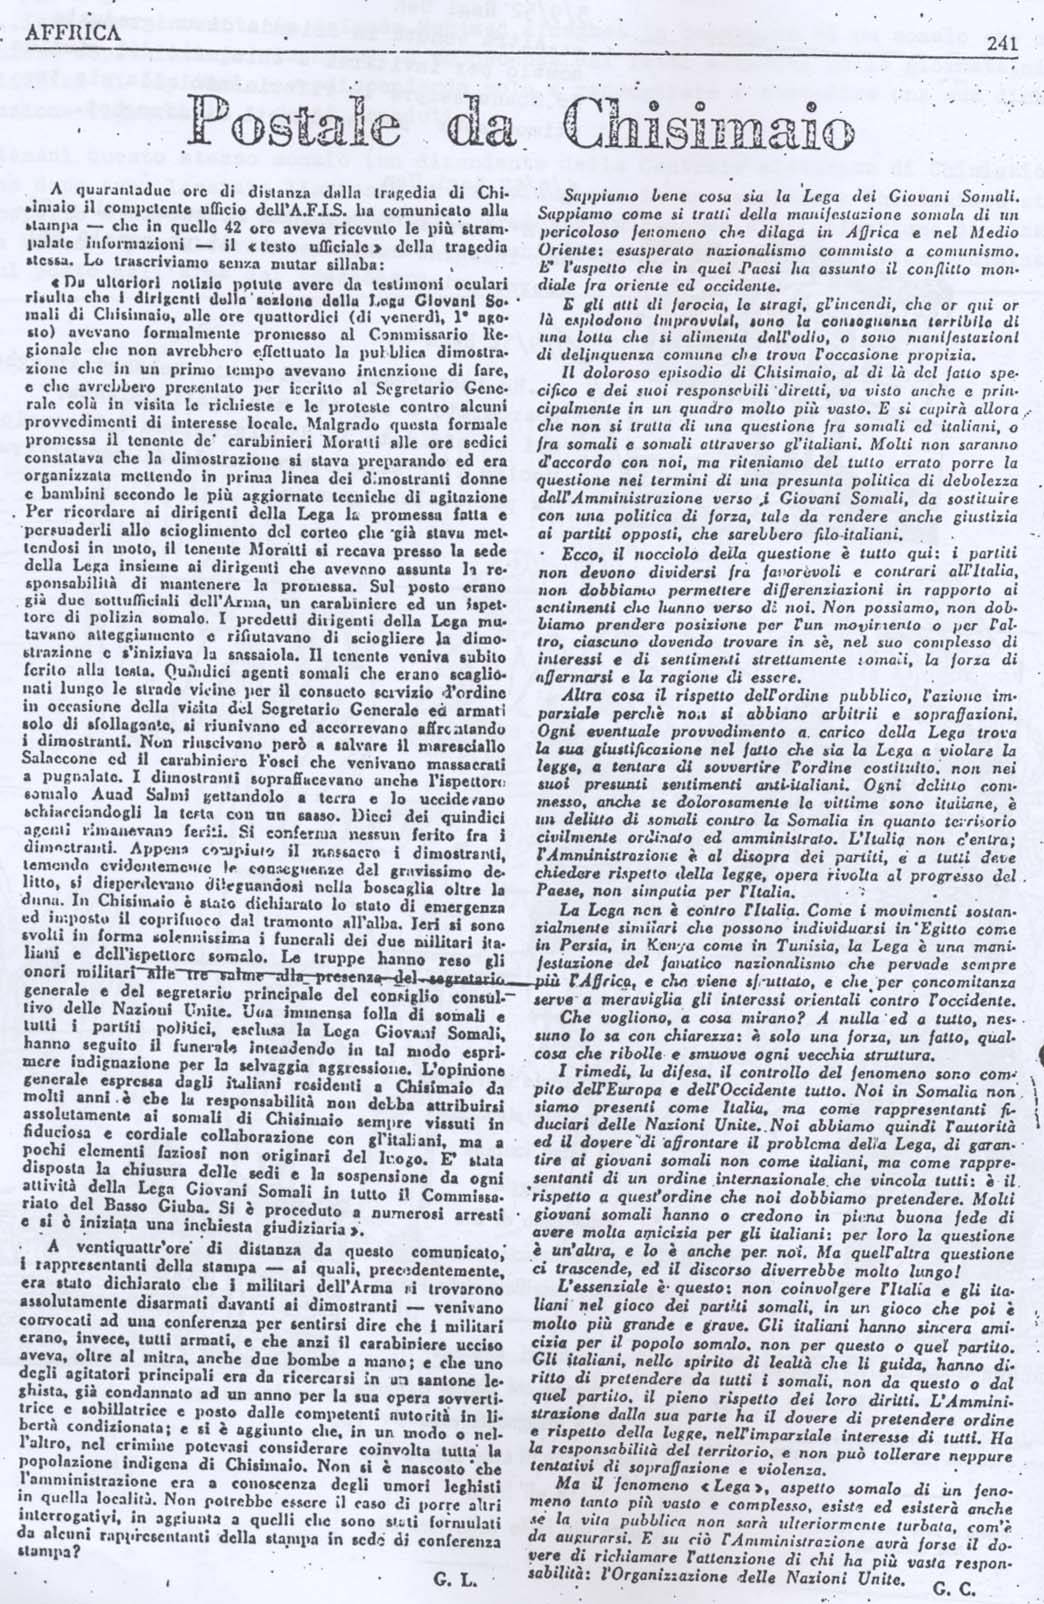 Cronaca de " Il Postale di Chisimaio" sull'assassinio dei carabinieri (6° Eccidio di Chisimaio)